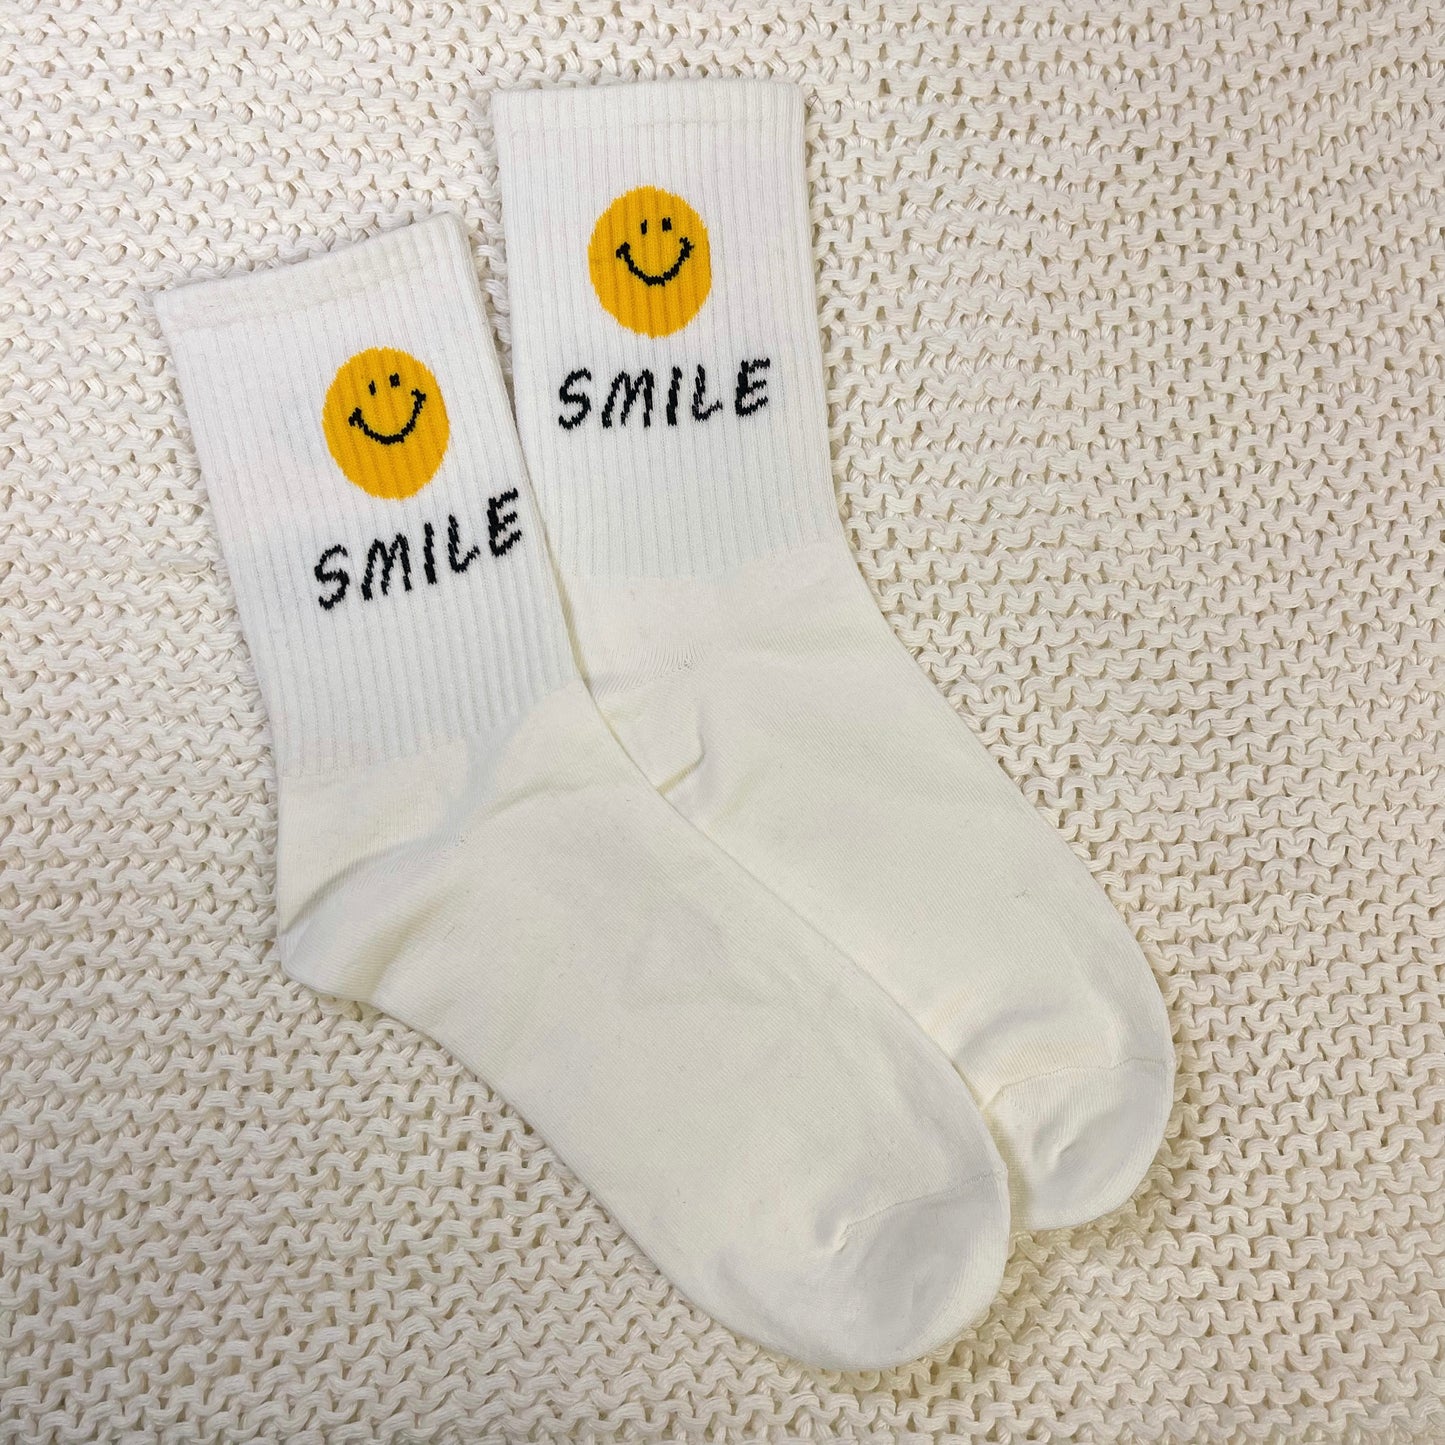 SMILE smiley face socks